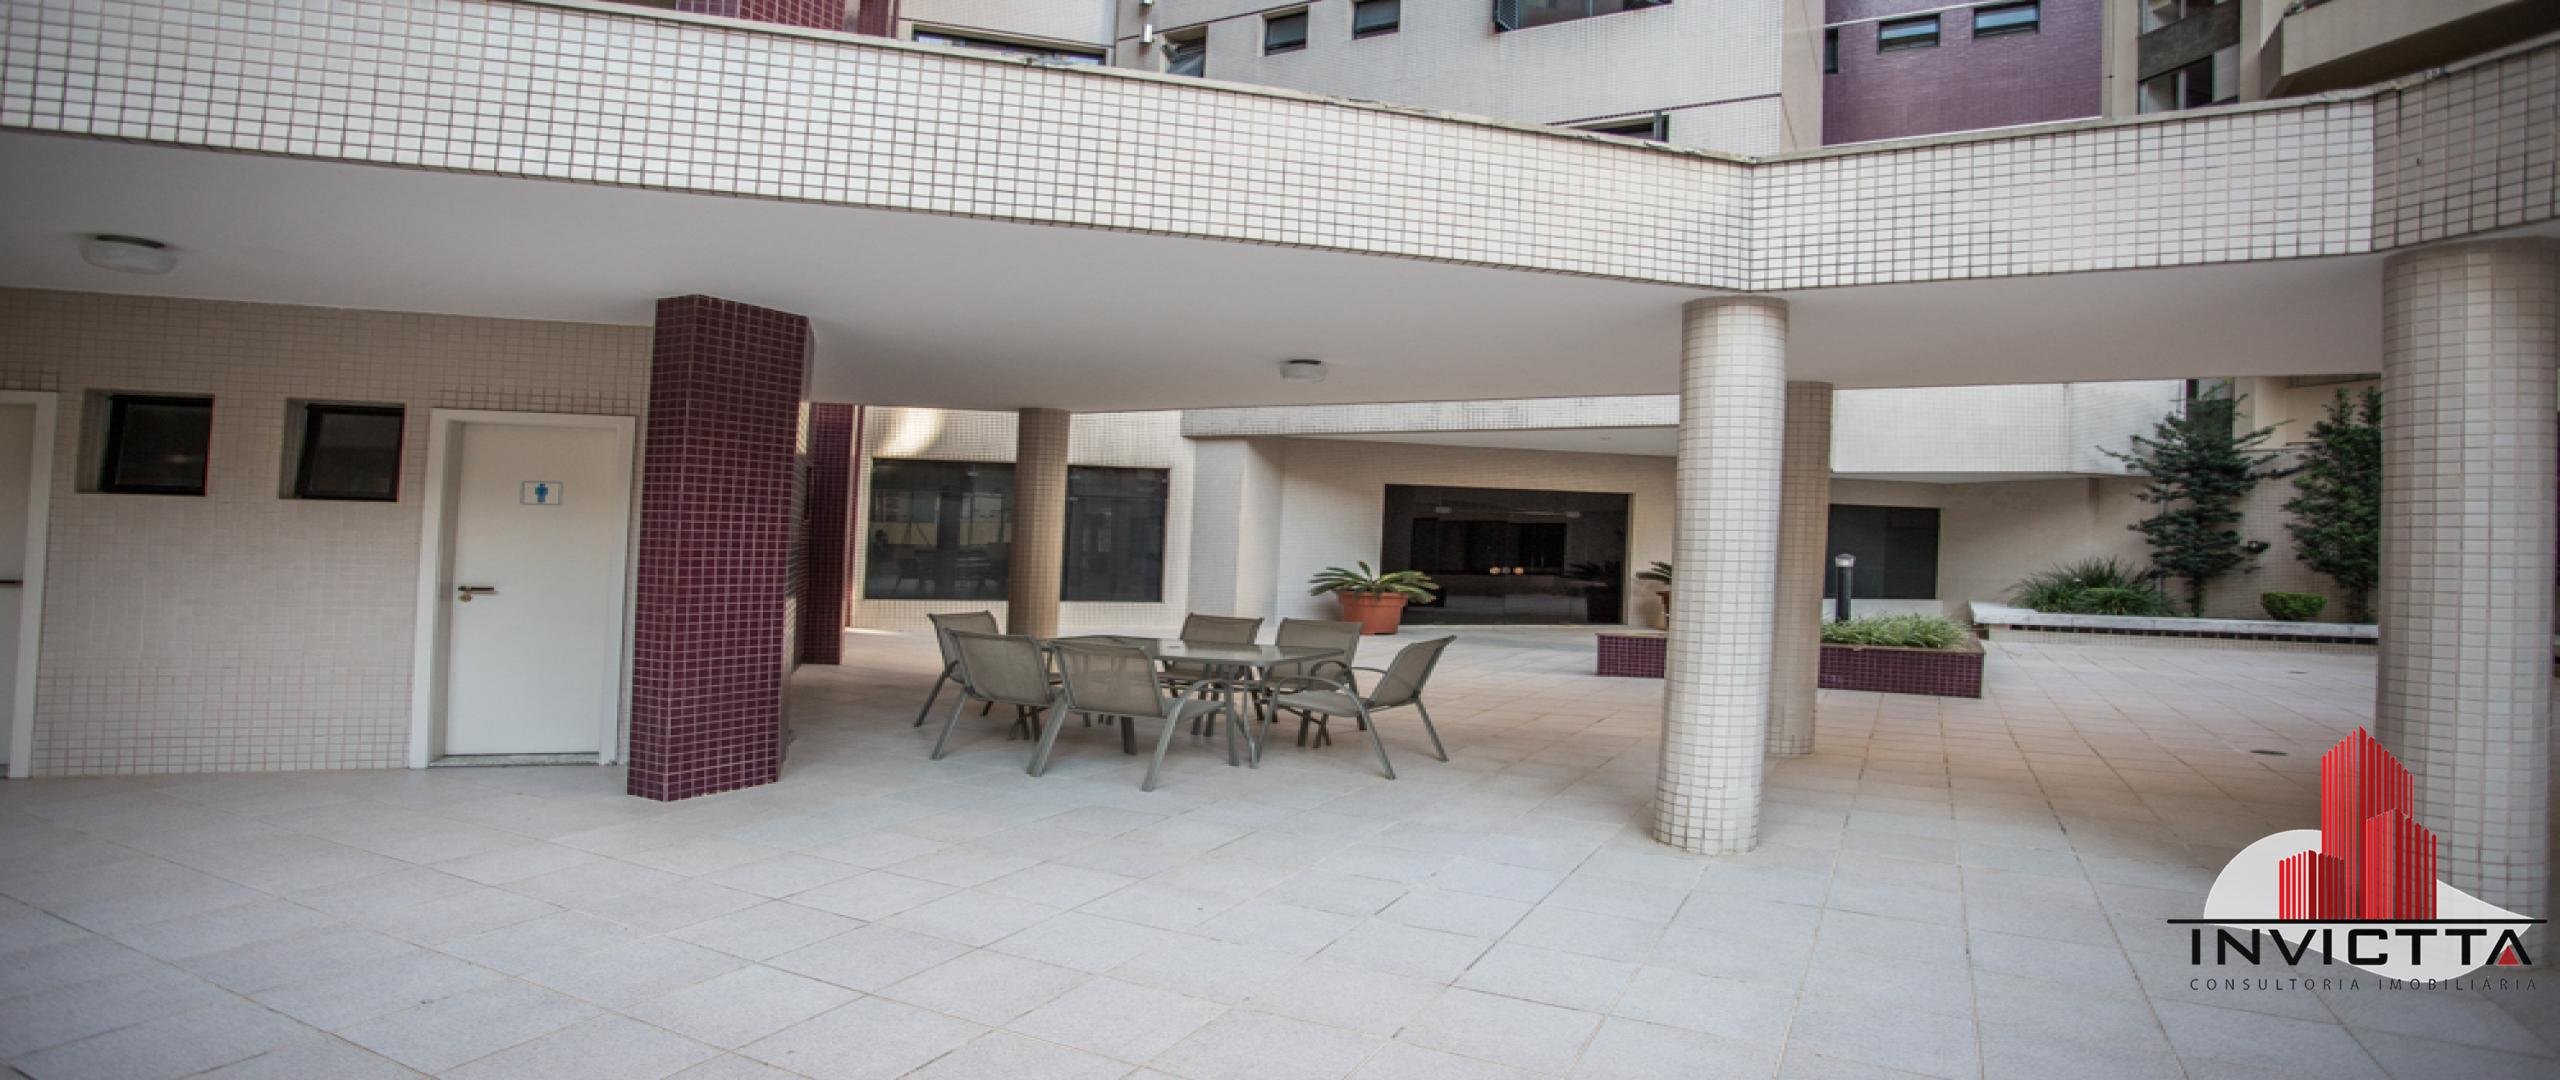 foto 83 do imóvel: apartamento a venda em Curitiba referência: AA 1208